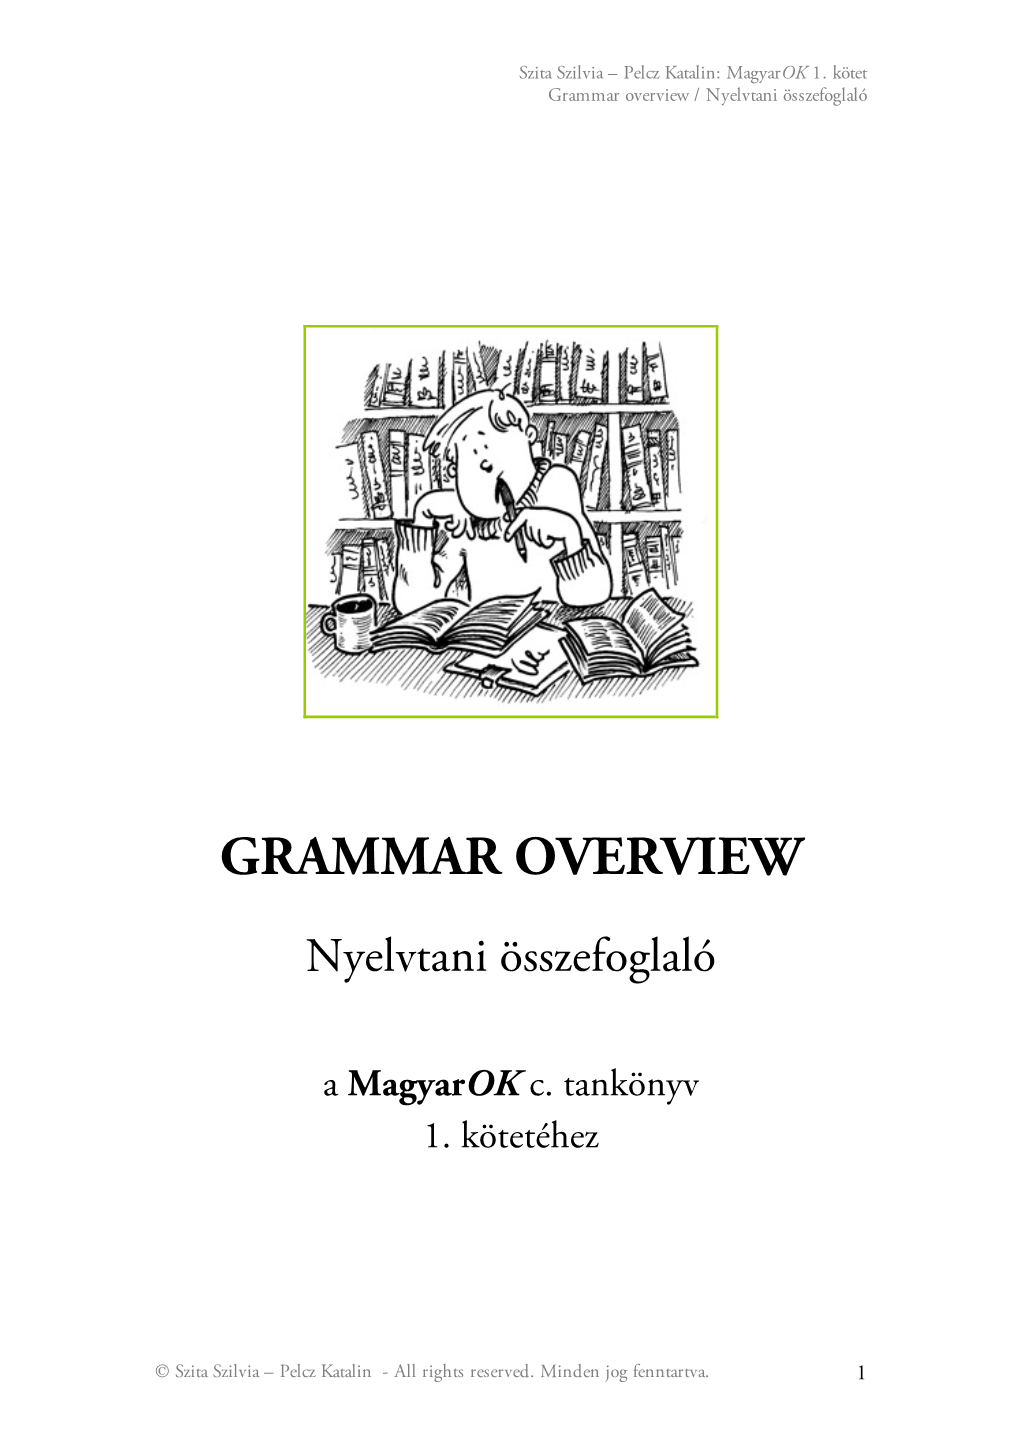 Grammar Overview / Nyelvtani Összefoglaló